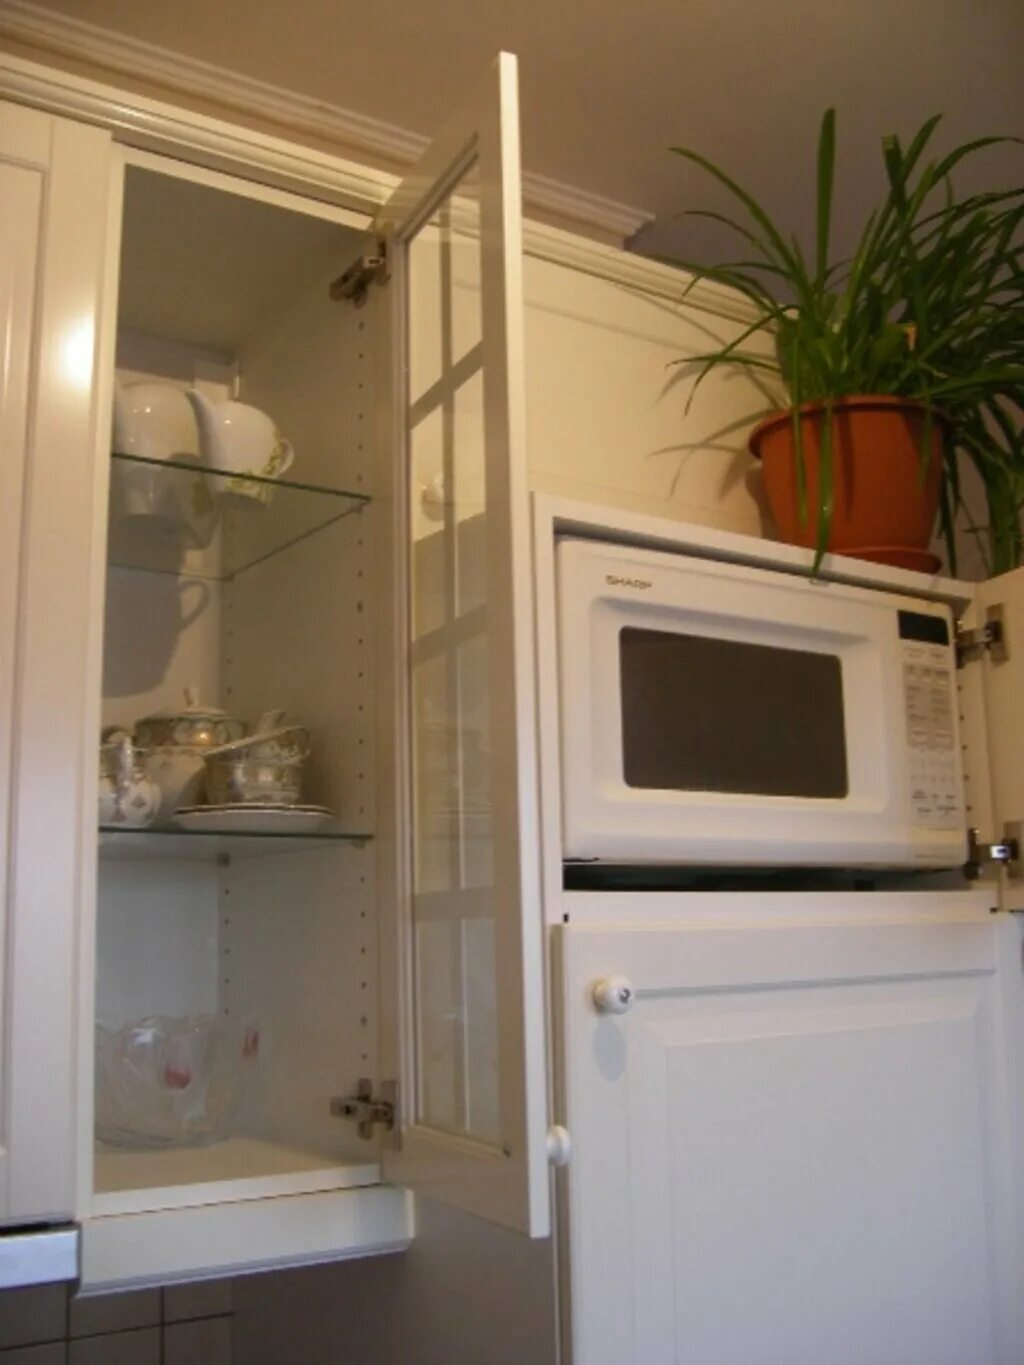 Микроволновая печь на холодильнике. Микроволновку на холодильник. Микроволновка на кухне. Микроволновка над холодильником.